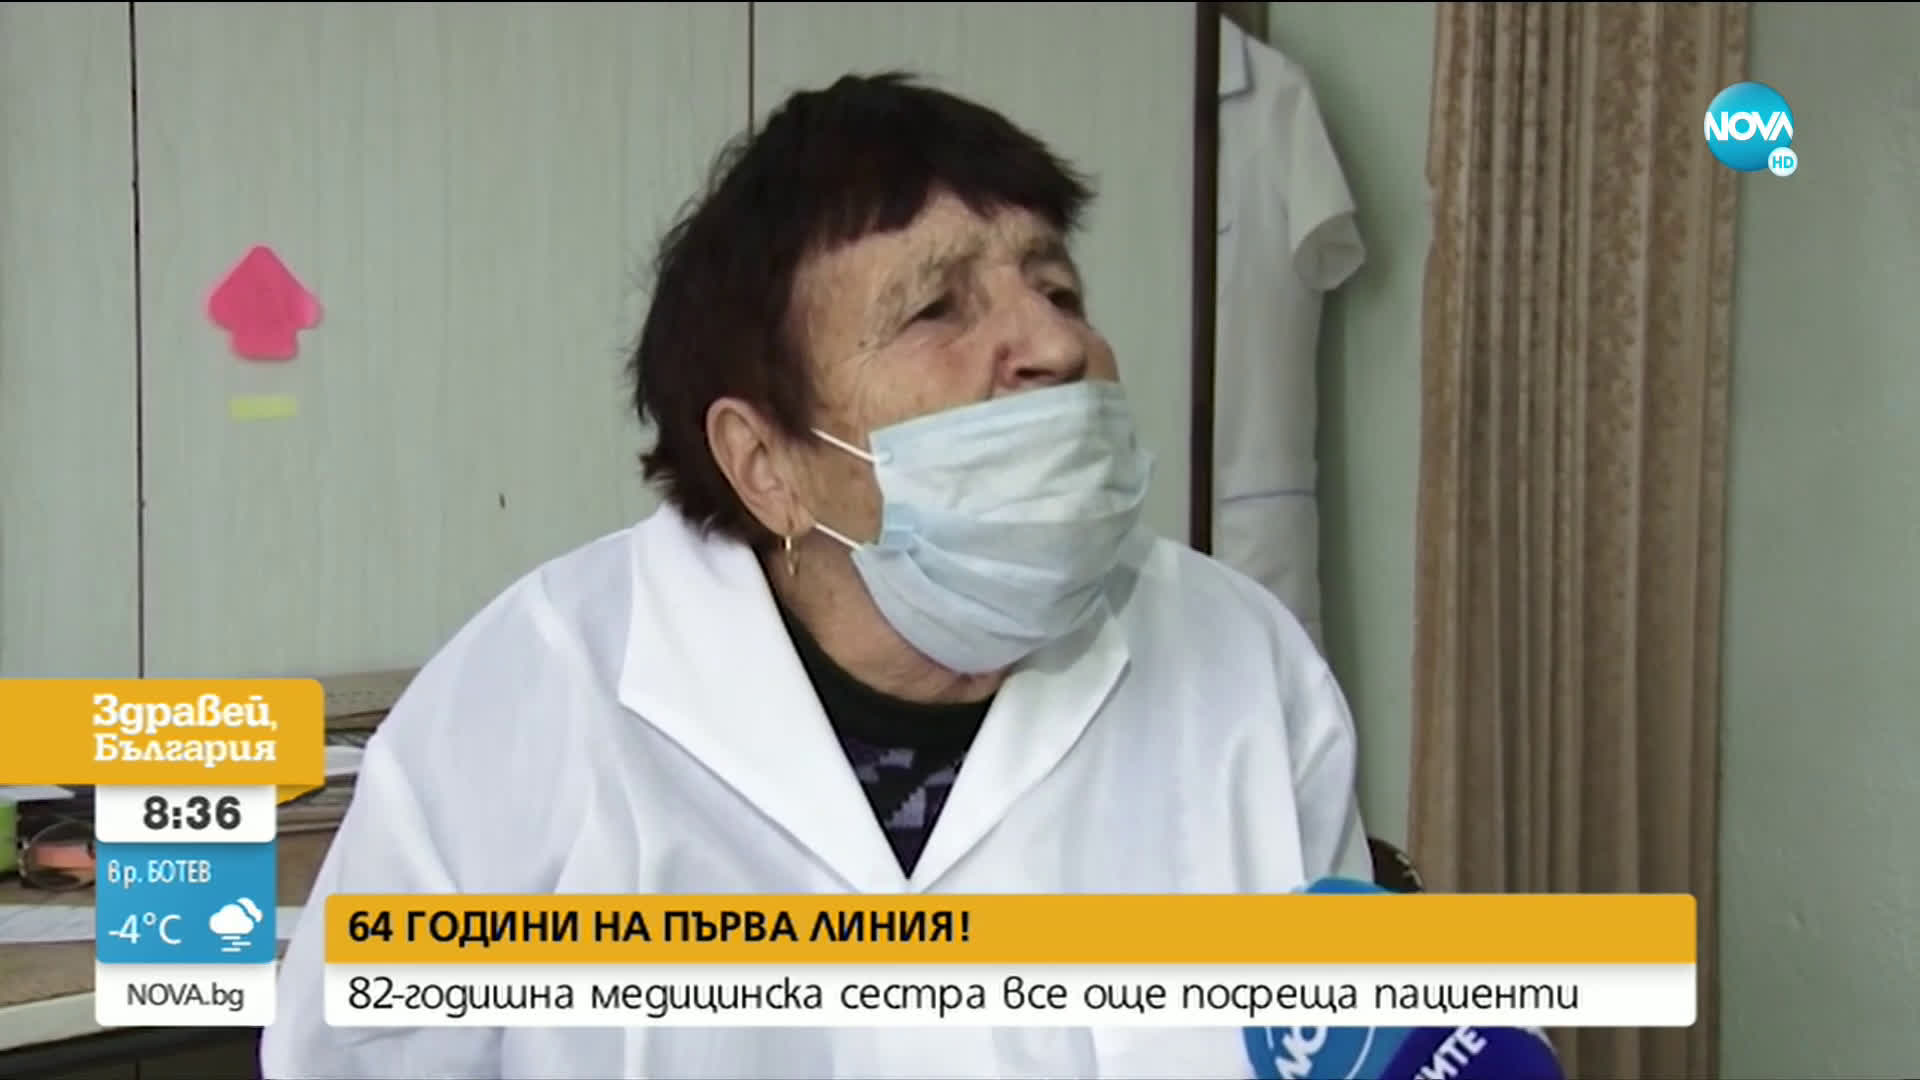 82-годишна медицинска сестра все още посреща пациенти